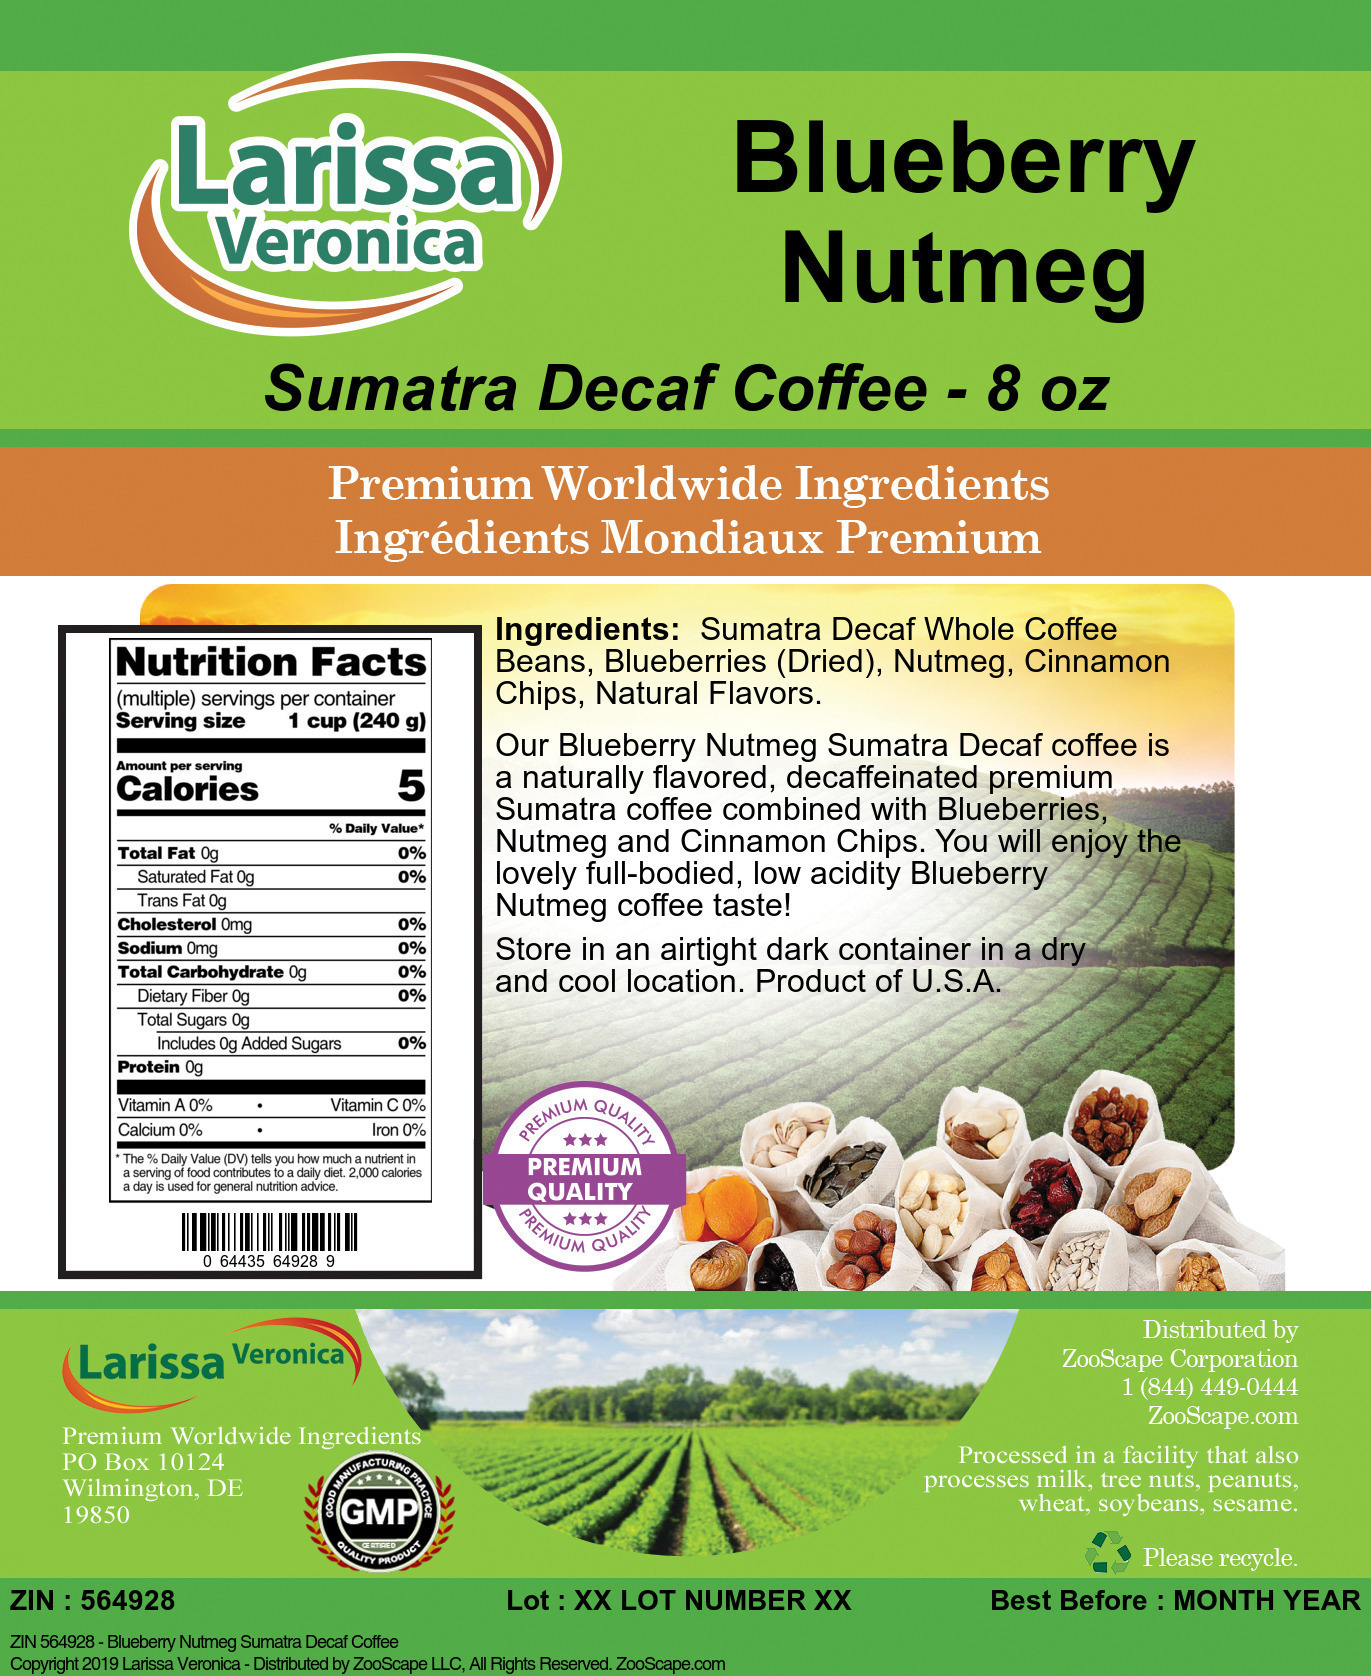 Blueberry Nutmeg Sumatra Decaf Coffee - Label